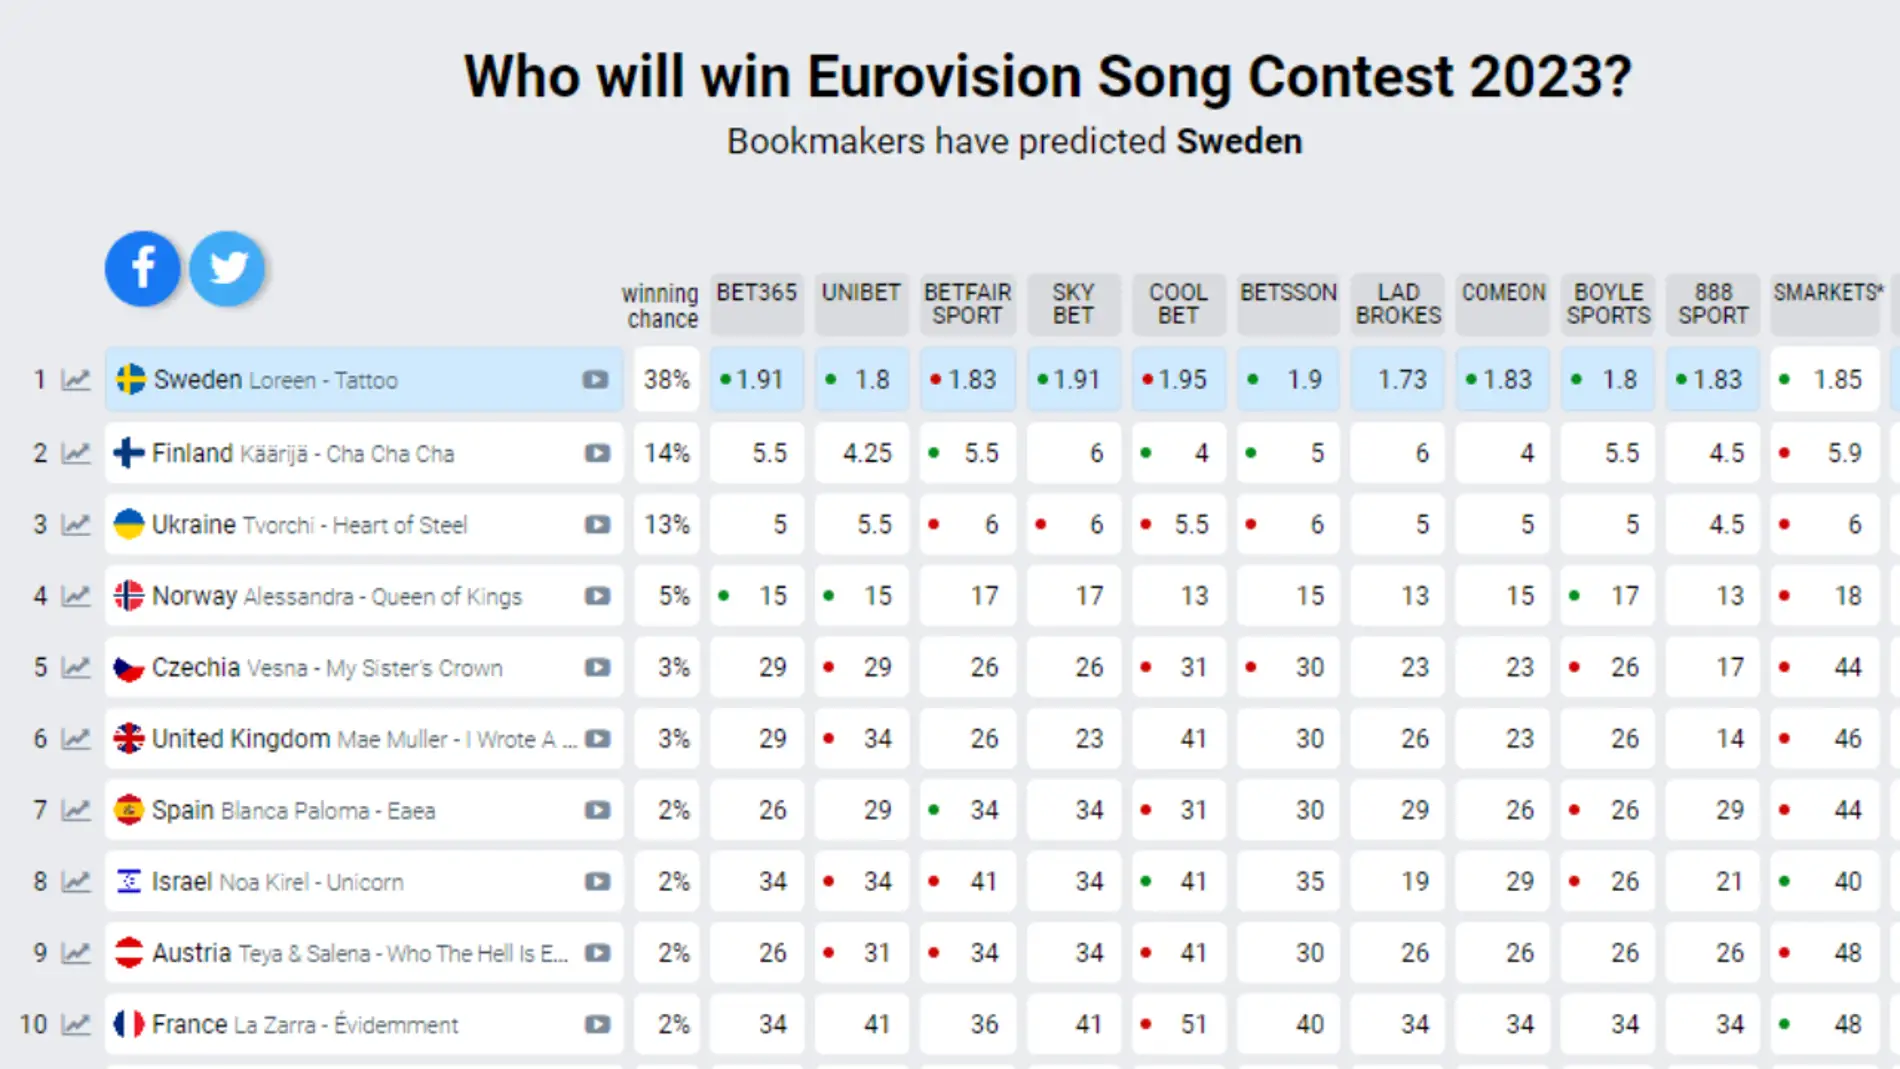 Loreen, favorita para ganar Eurovisión 2023 según ls encuestas 